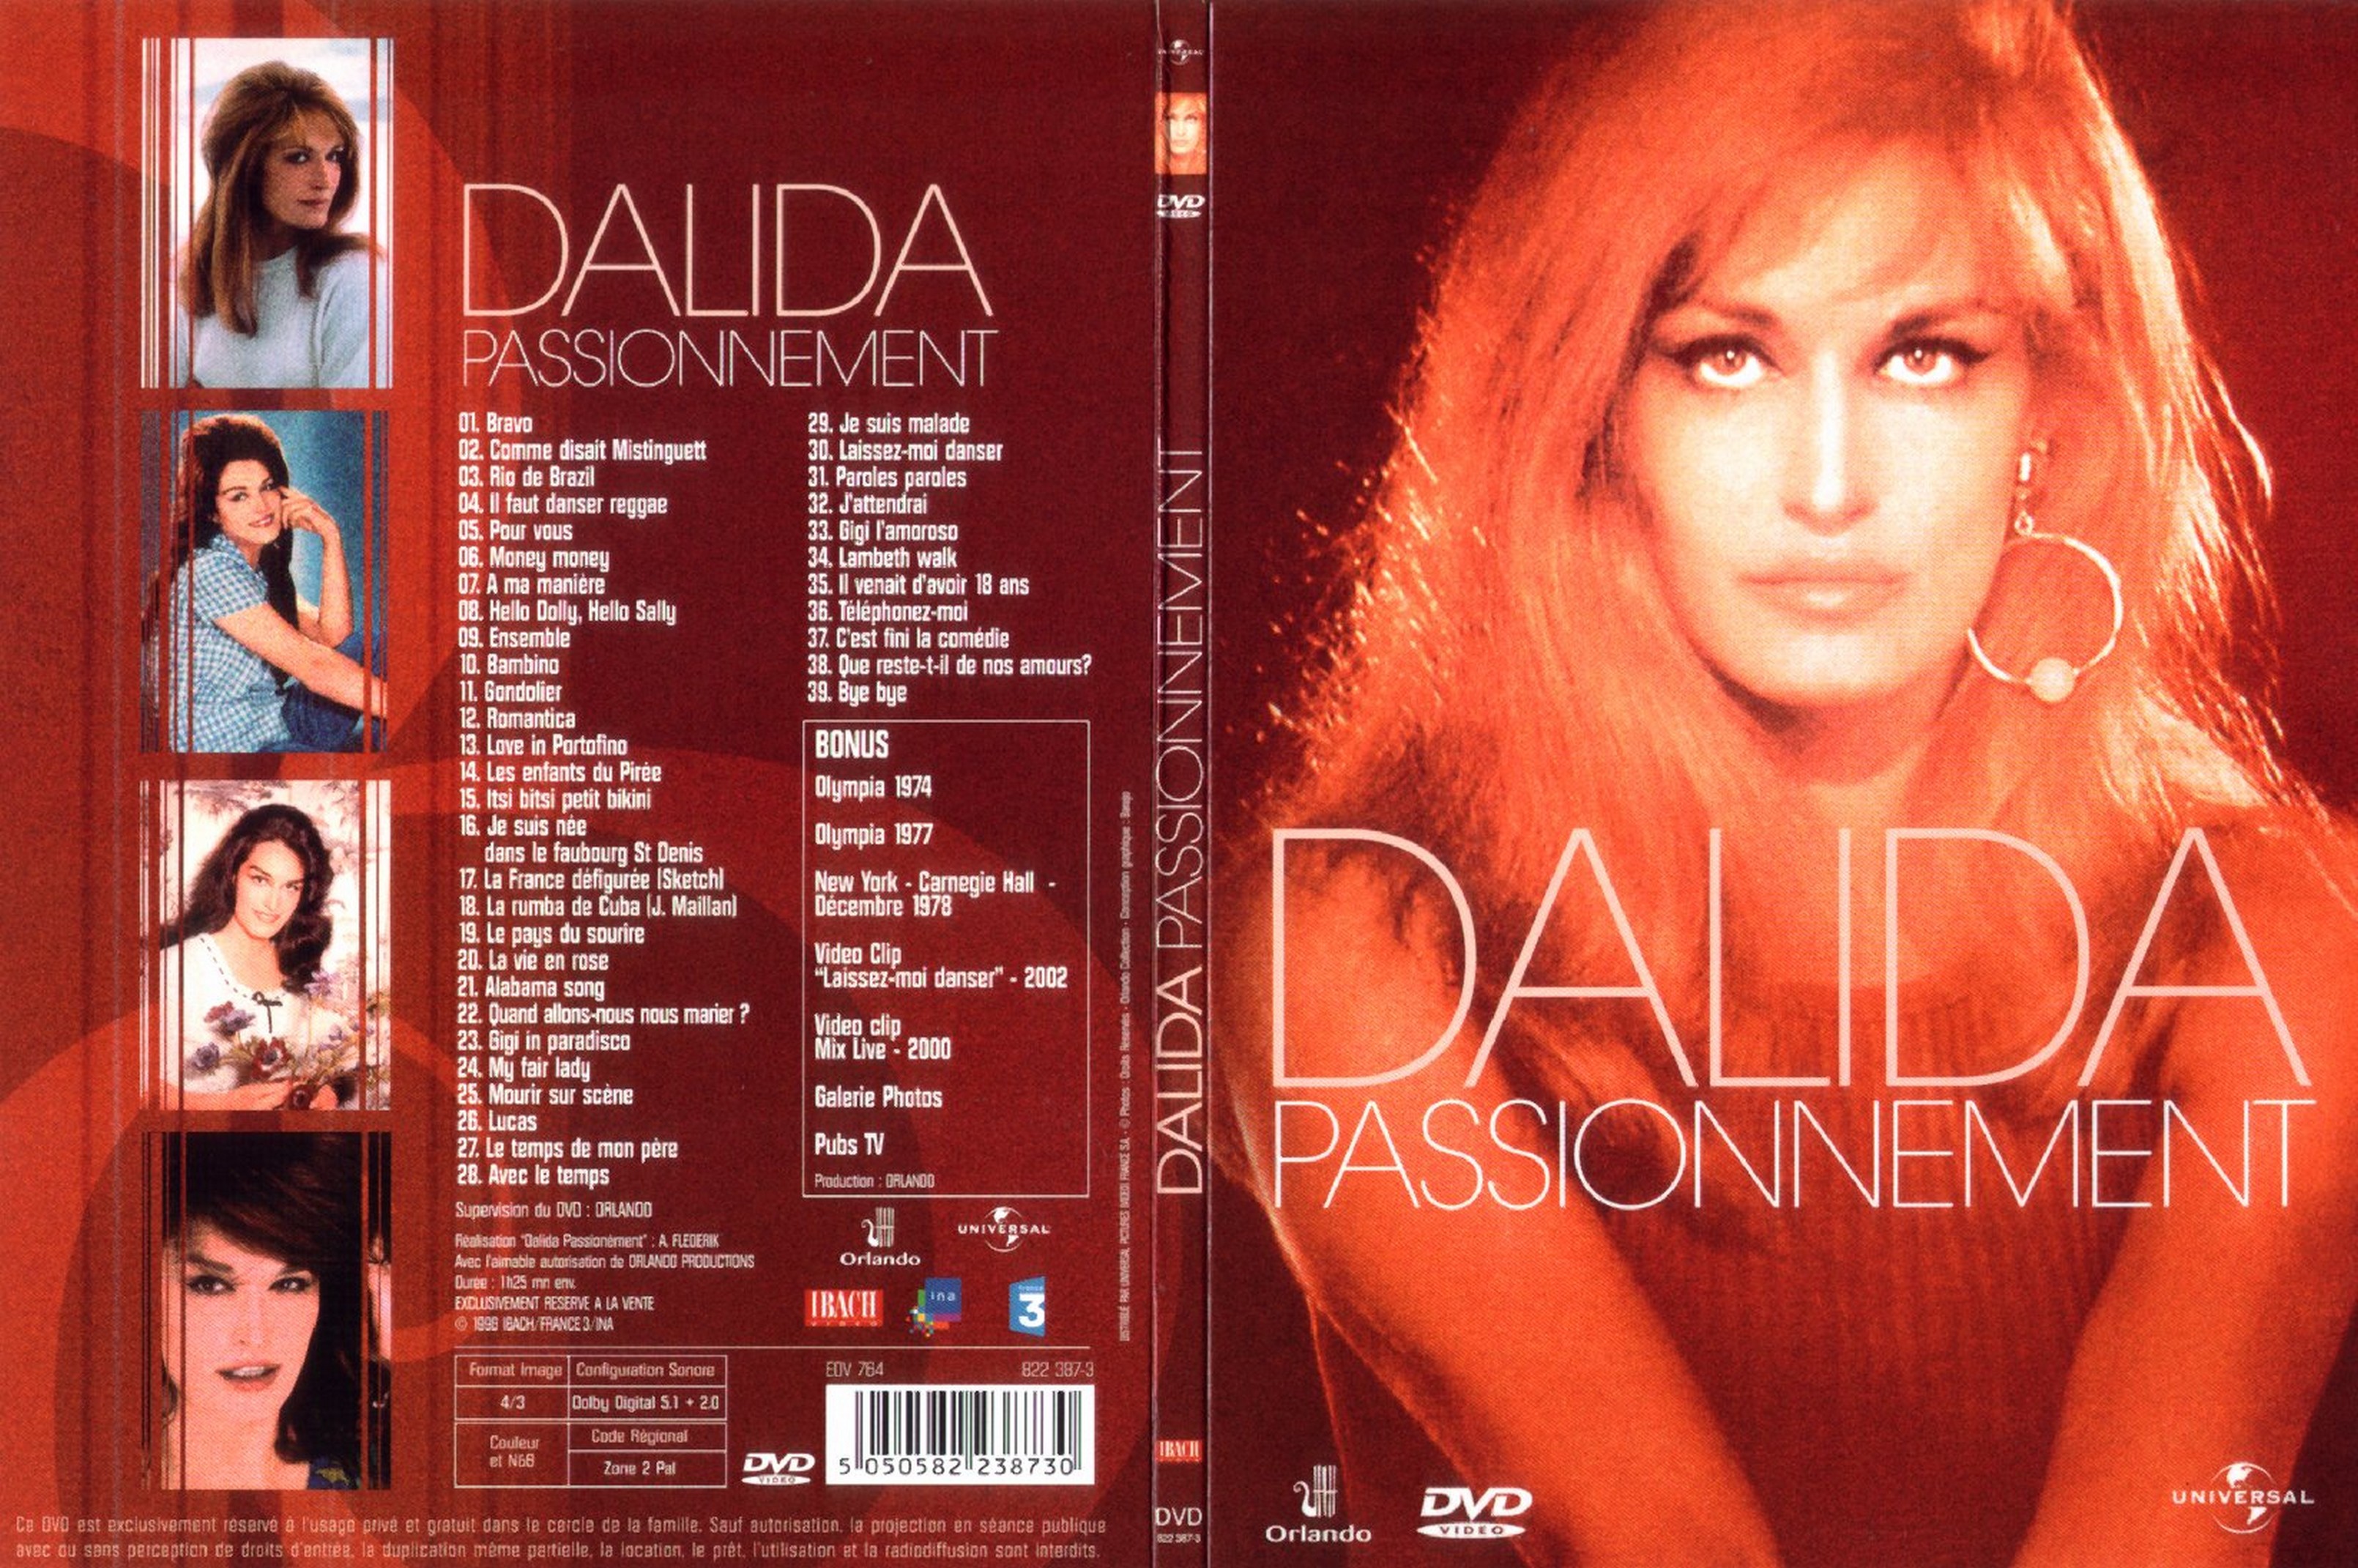 Jaquette DVD Dalida passionnment